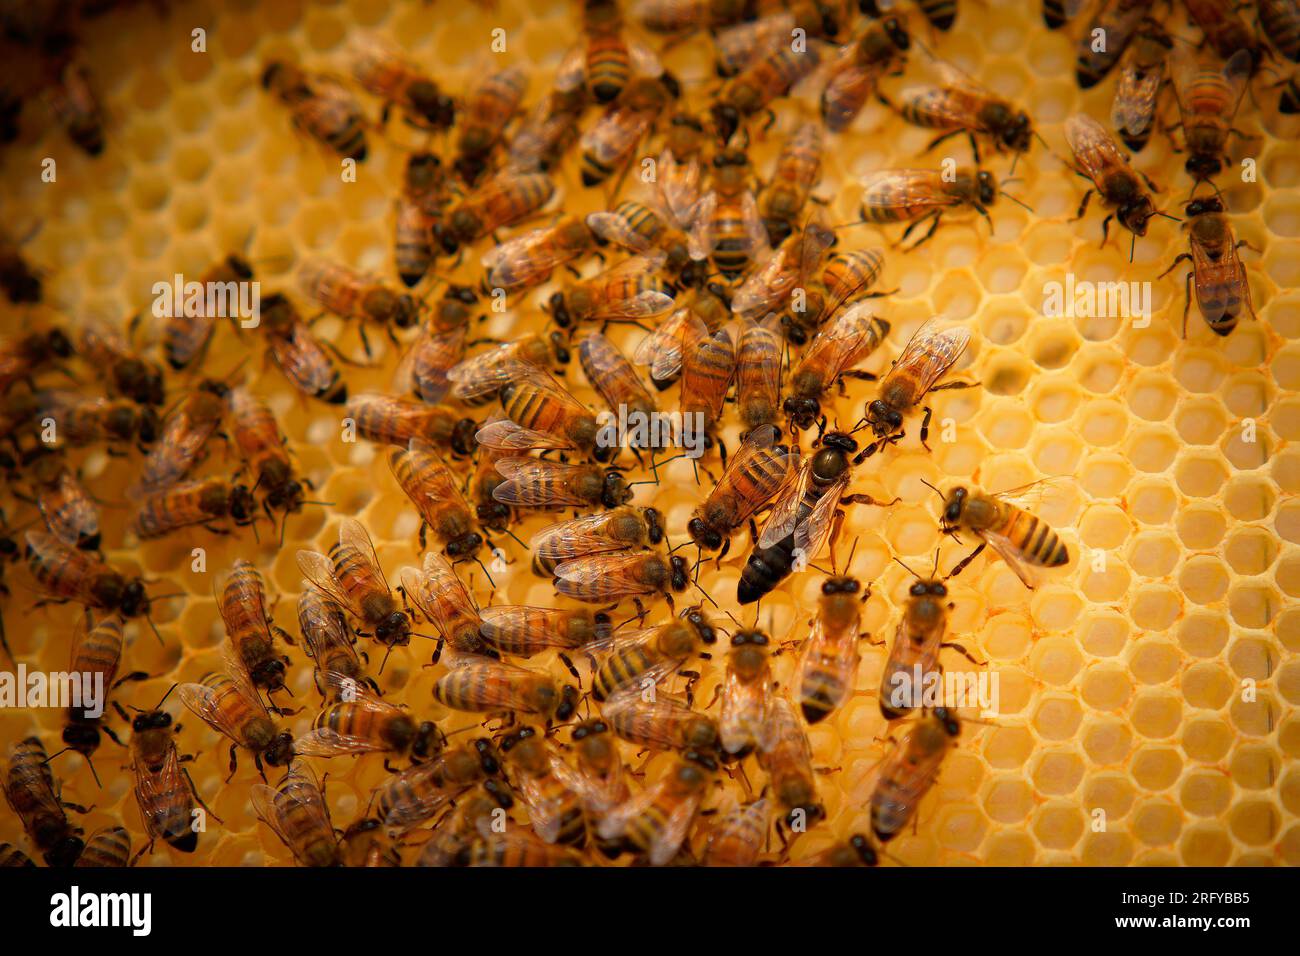 Bienenzucht oder Imkerei, Pflege der Bienen, Arbeitshand am Honig, Imkerei (auch Bienenzucht) mit Bienenstöcken und arbeitende Imker im australischen Outback, Stockfoto